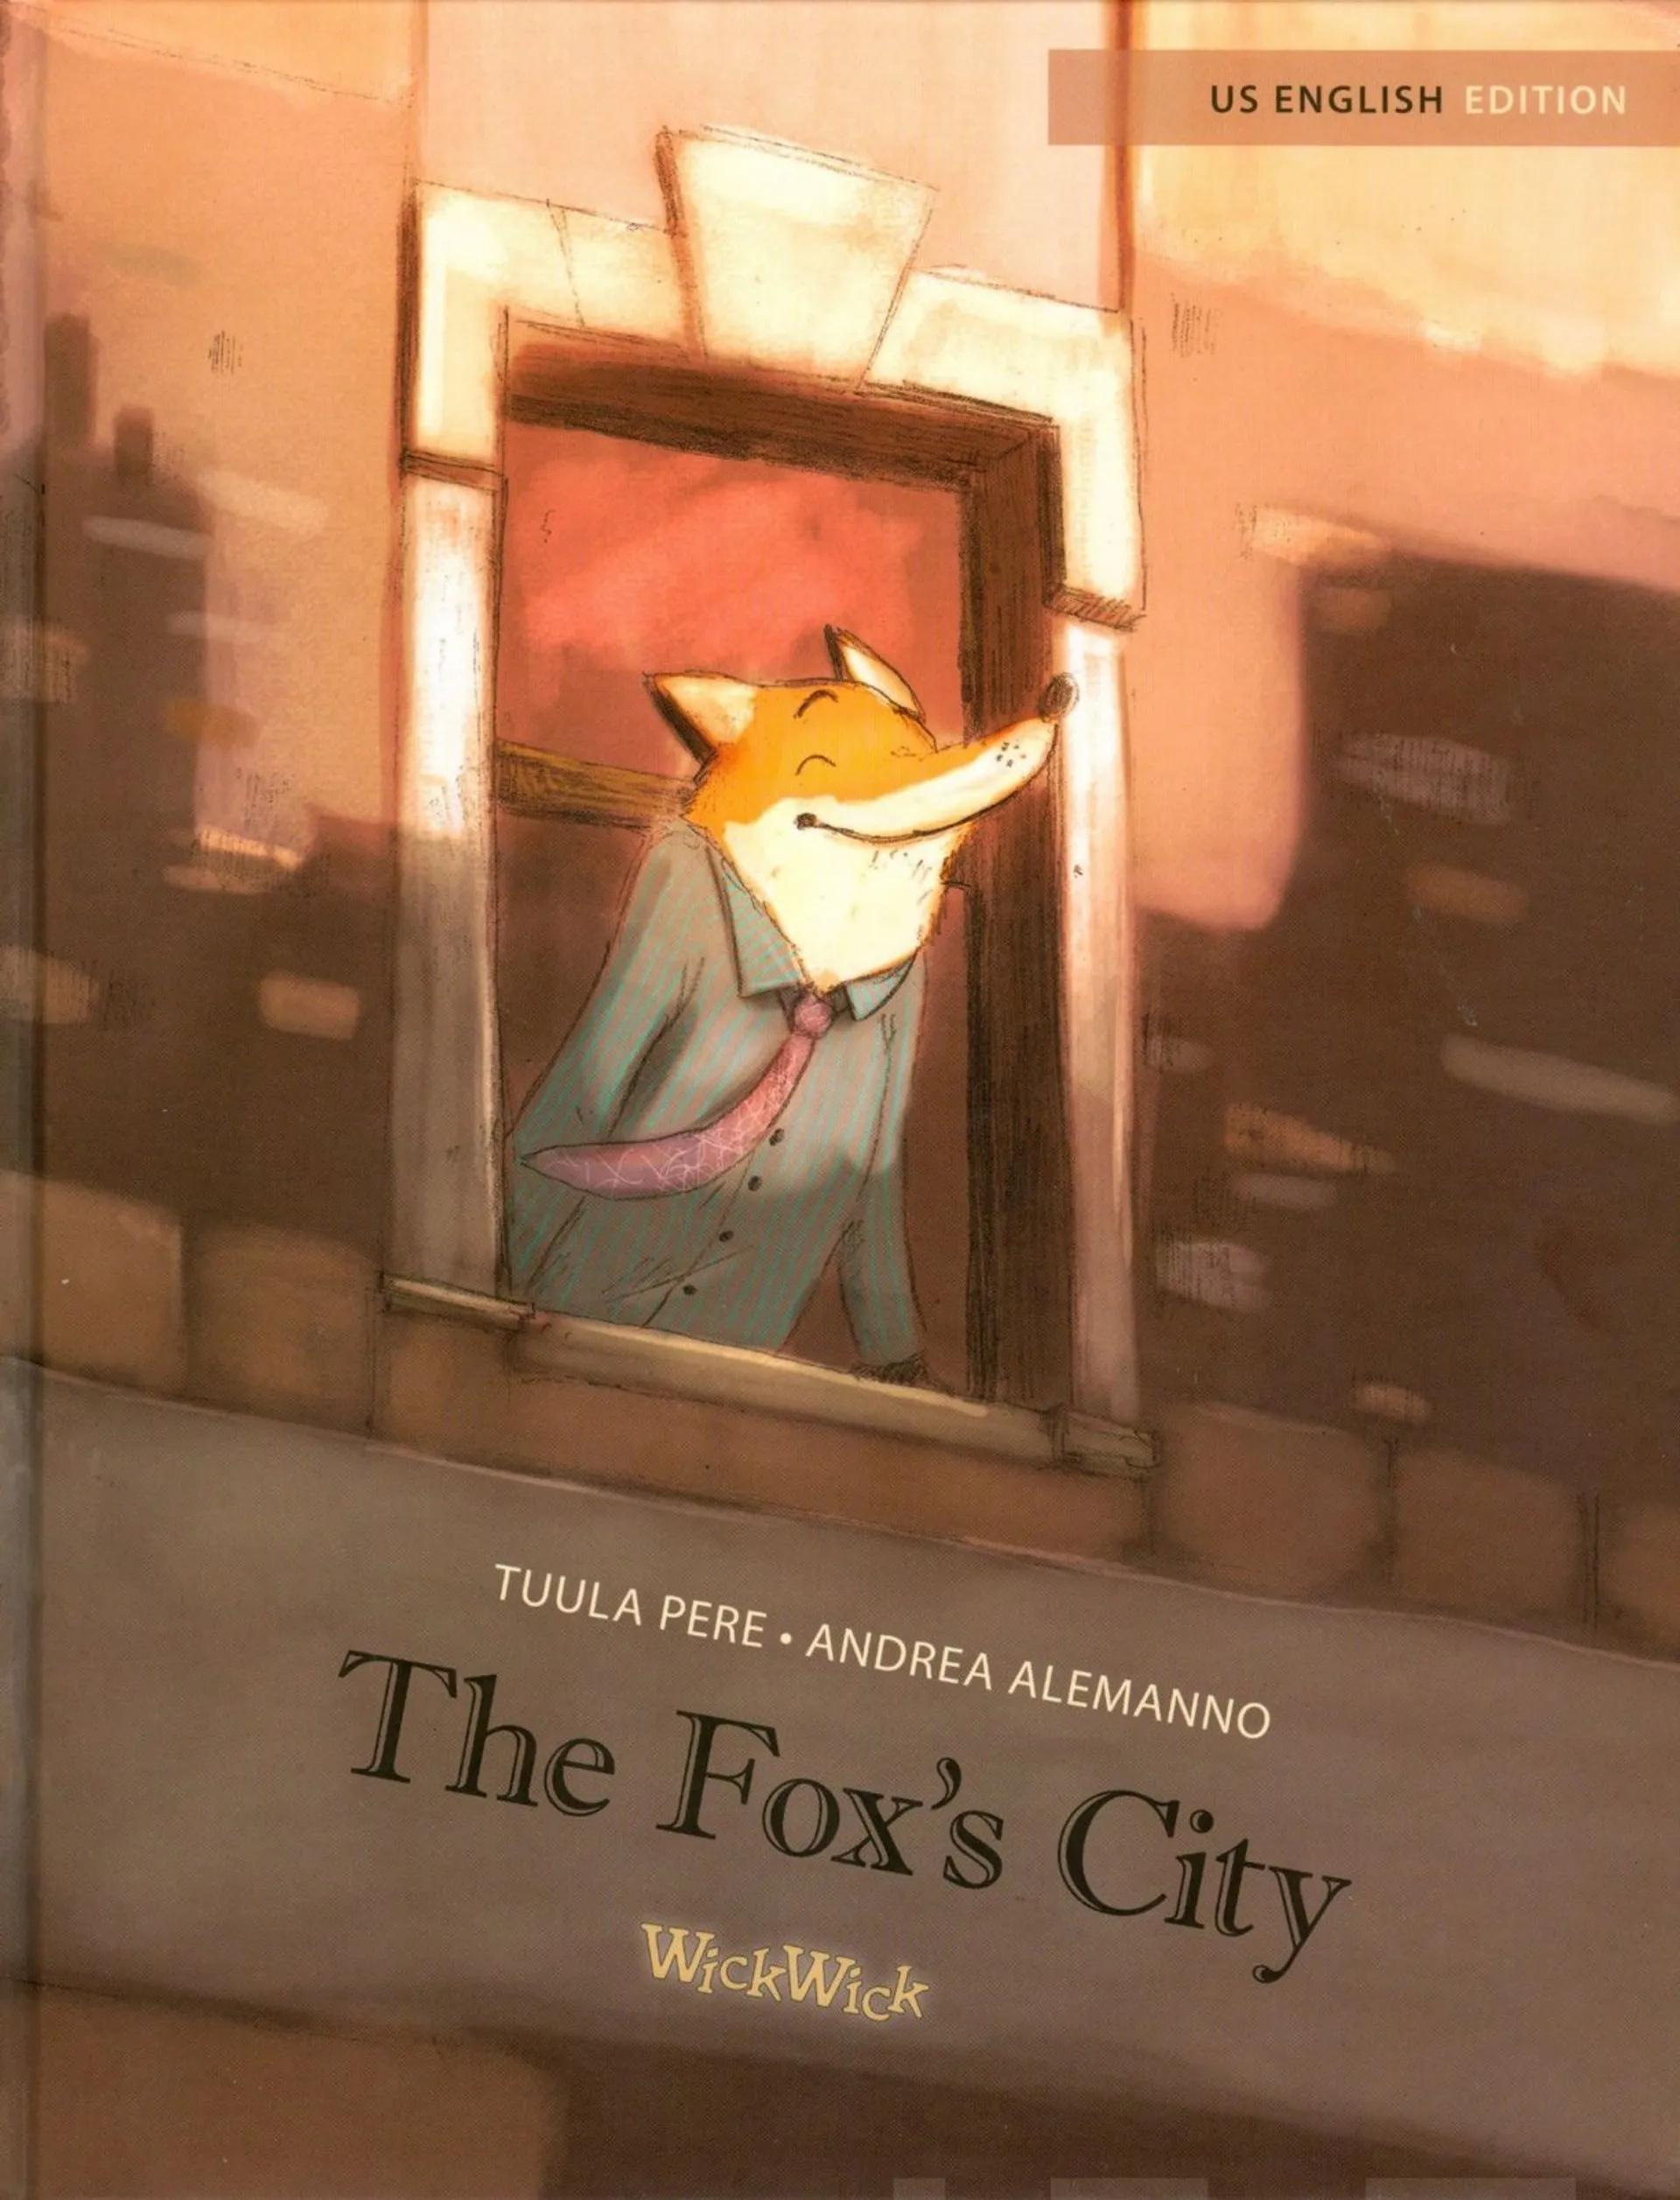 Pere, The Fox's City